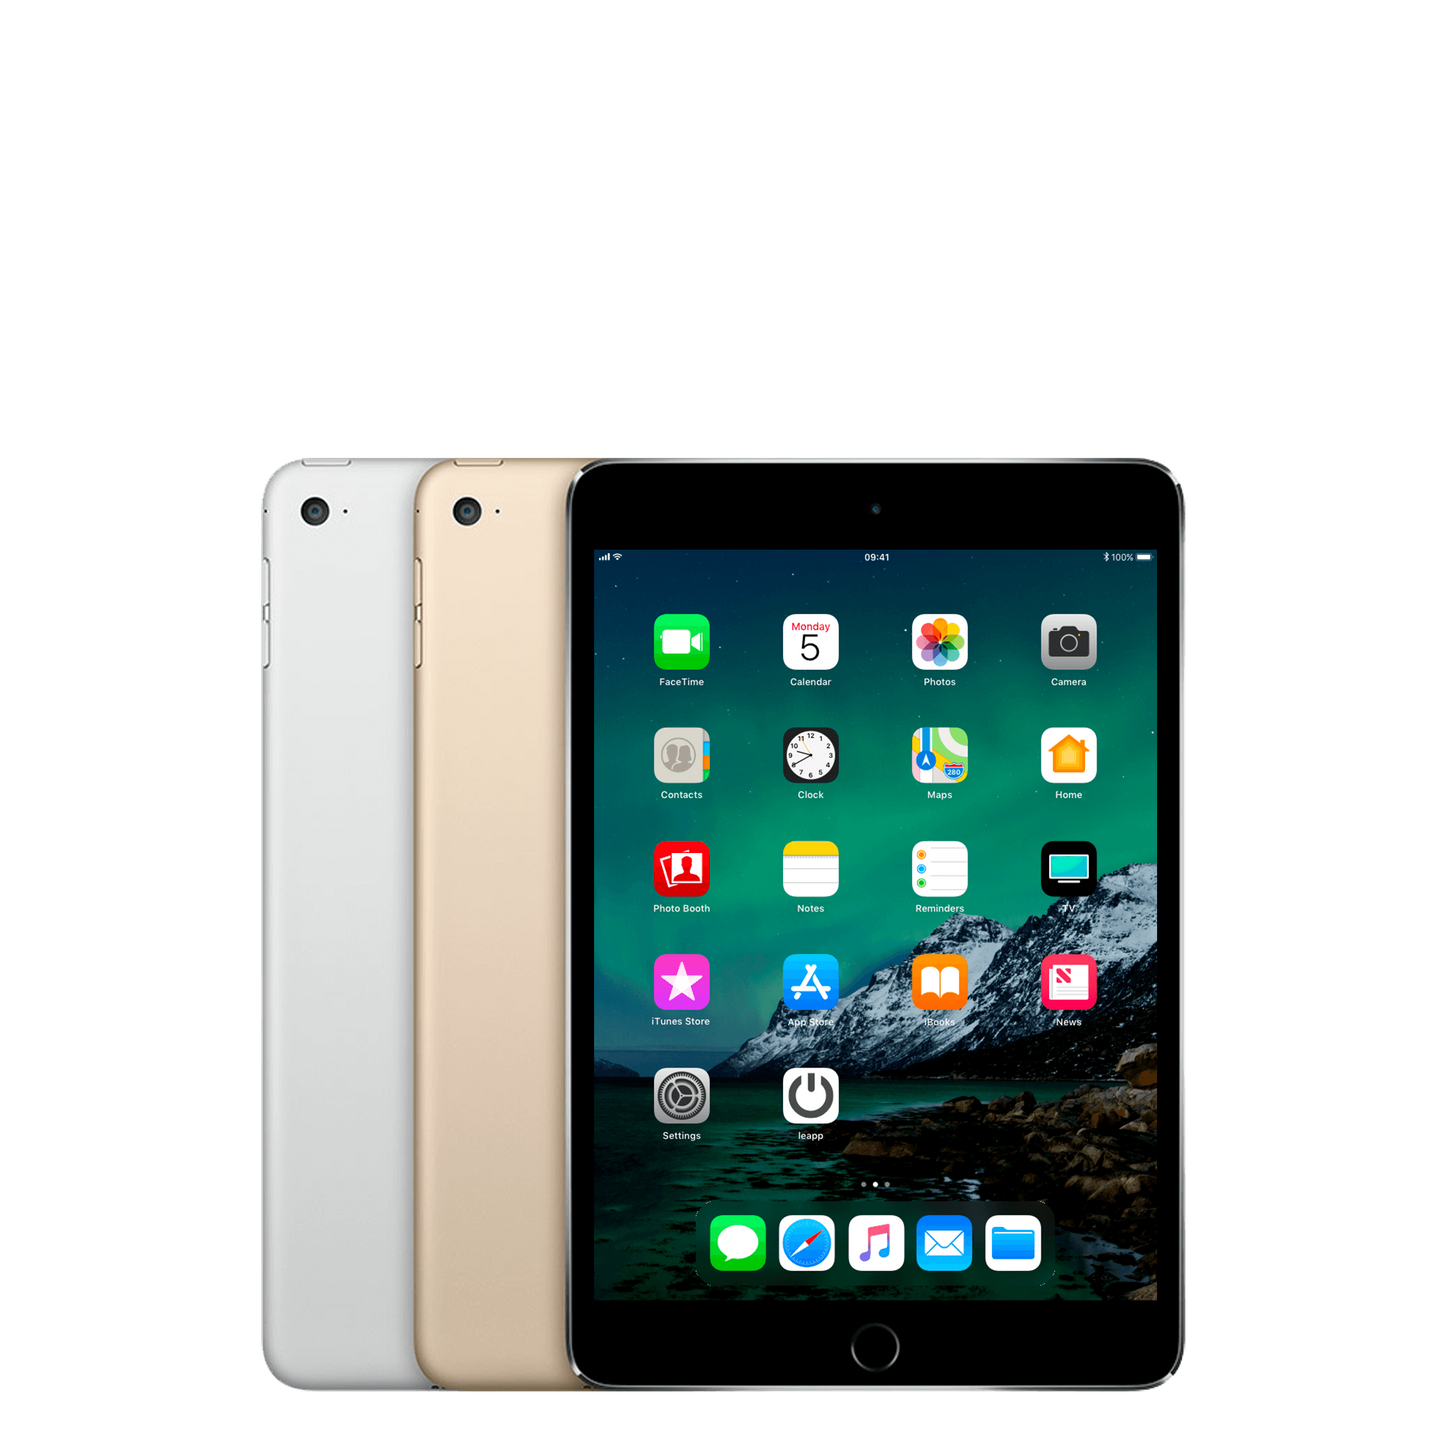 Refurbished iPad Mini 4 wifi 16gb - test-product-media-liquid1